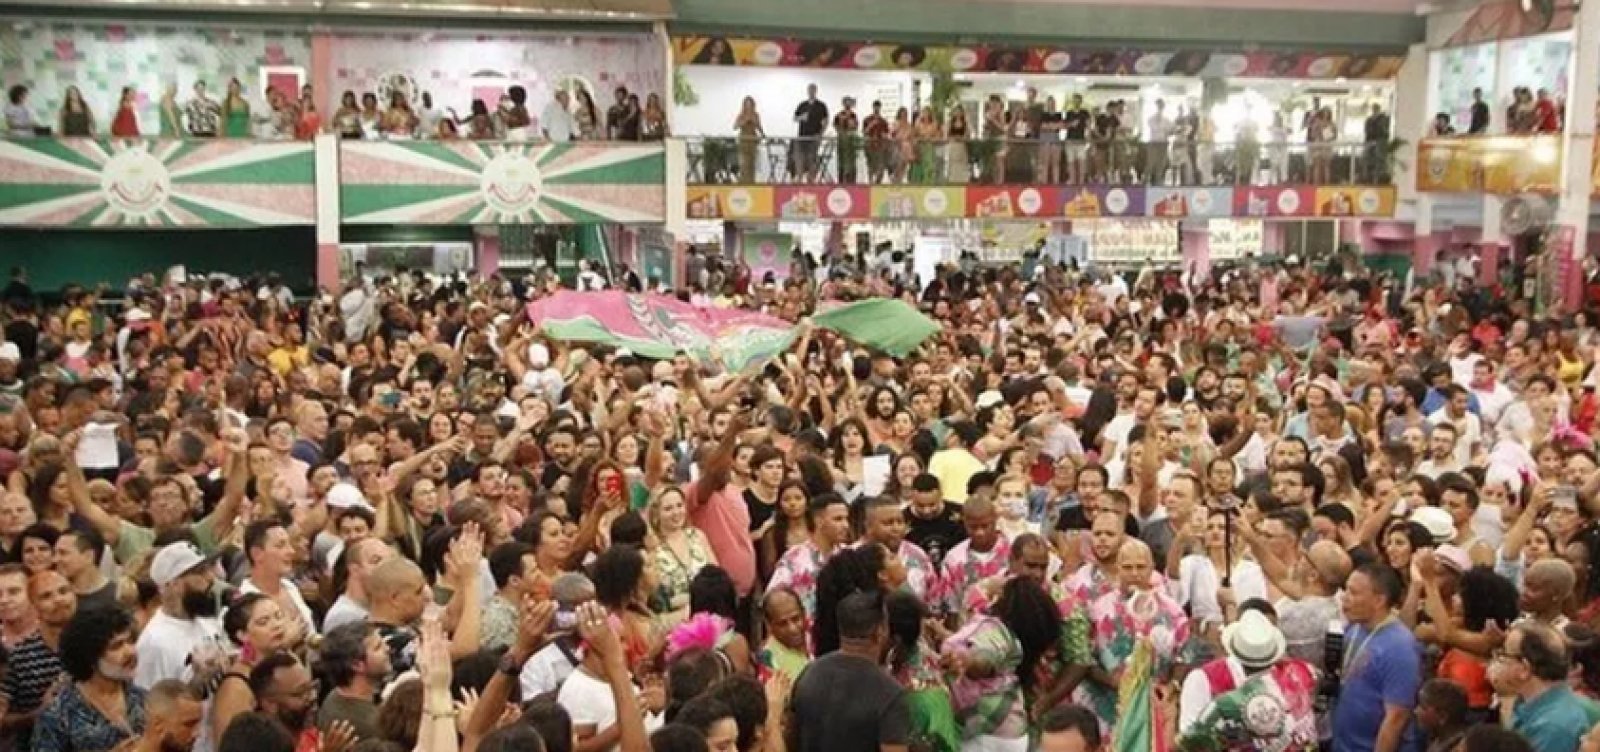 Prefeitura do Rio libera eventos em quadras de escolas de samba a partir de novembro